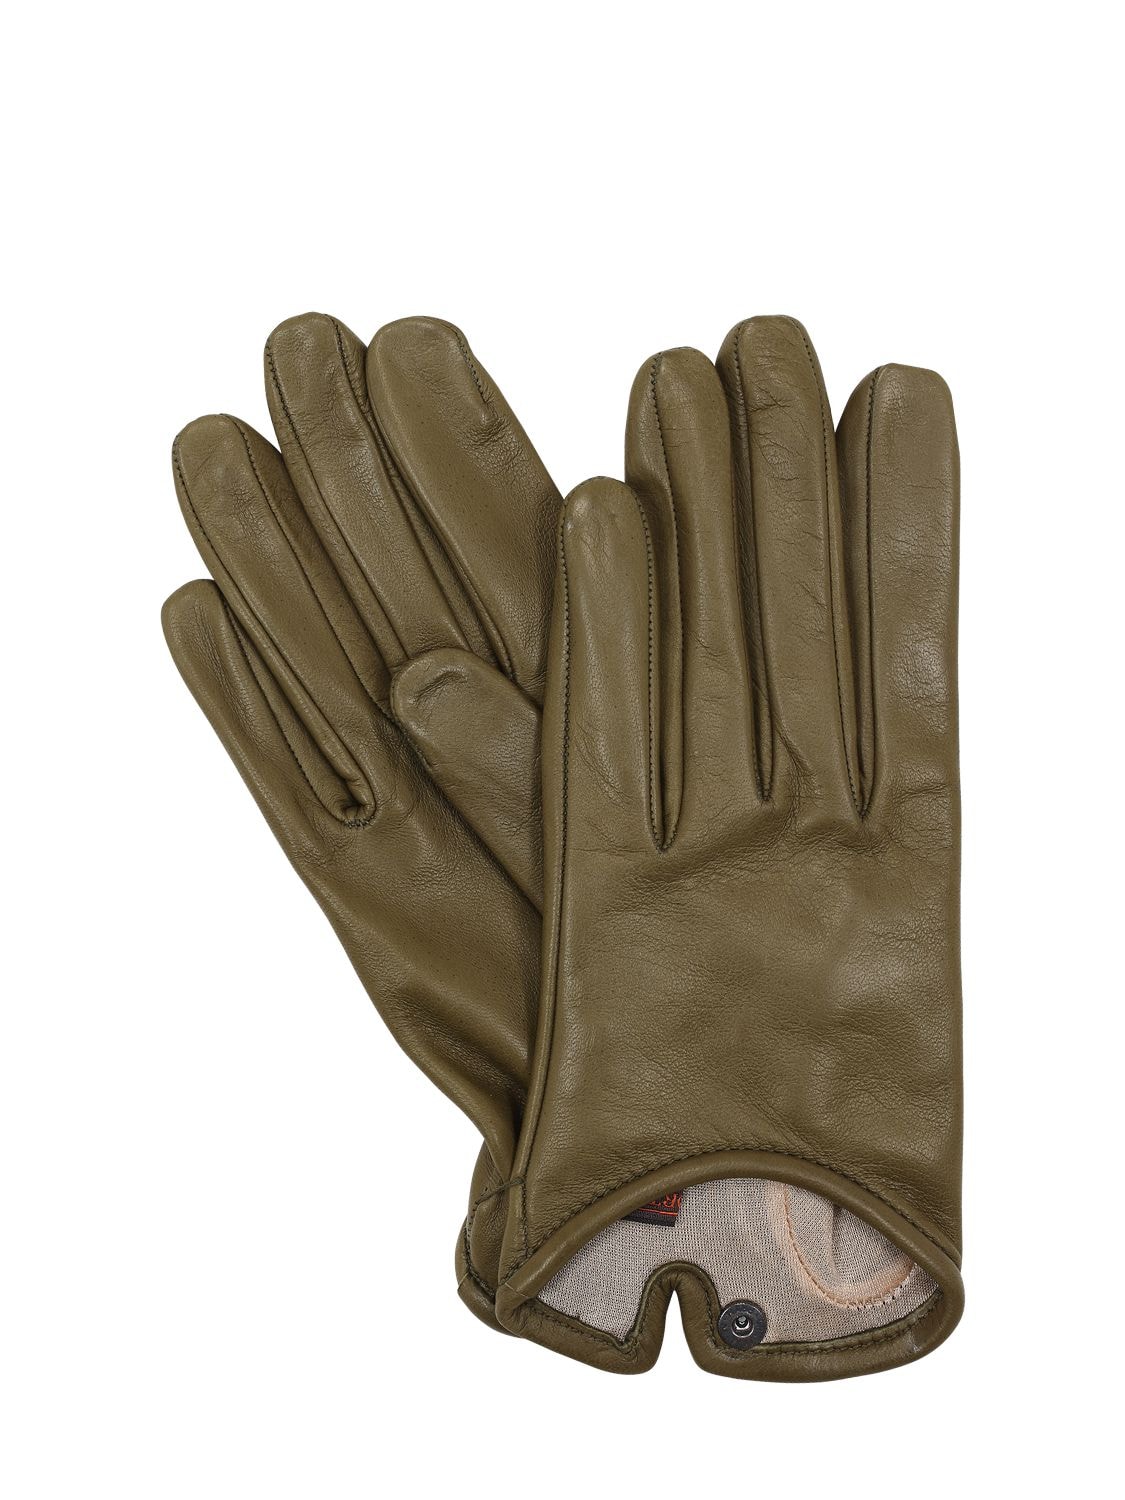 Mario Portolano Leather Gloves In Militare